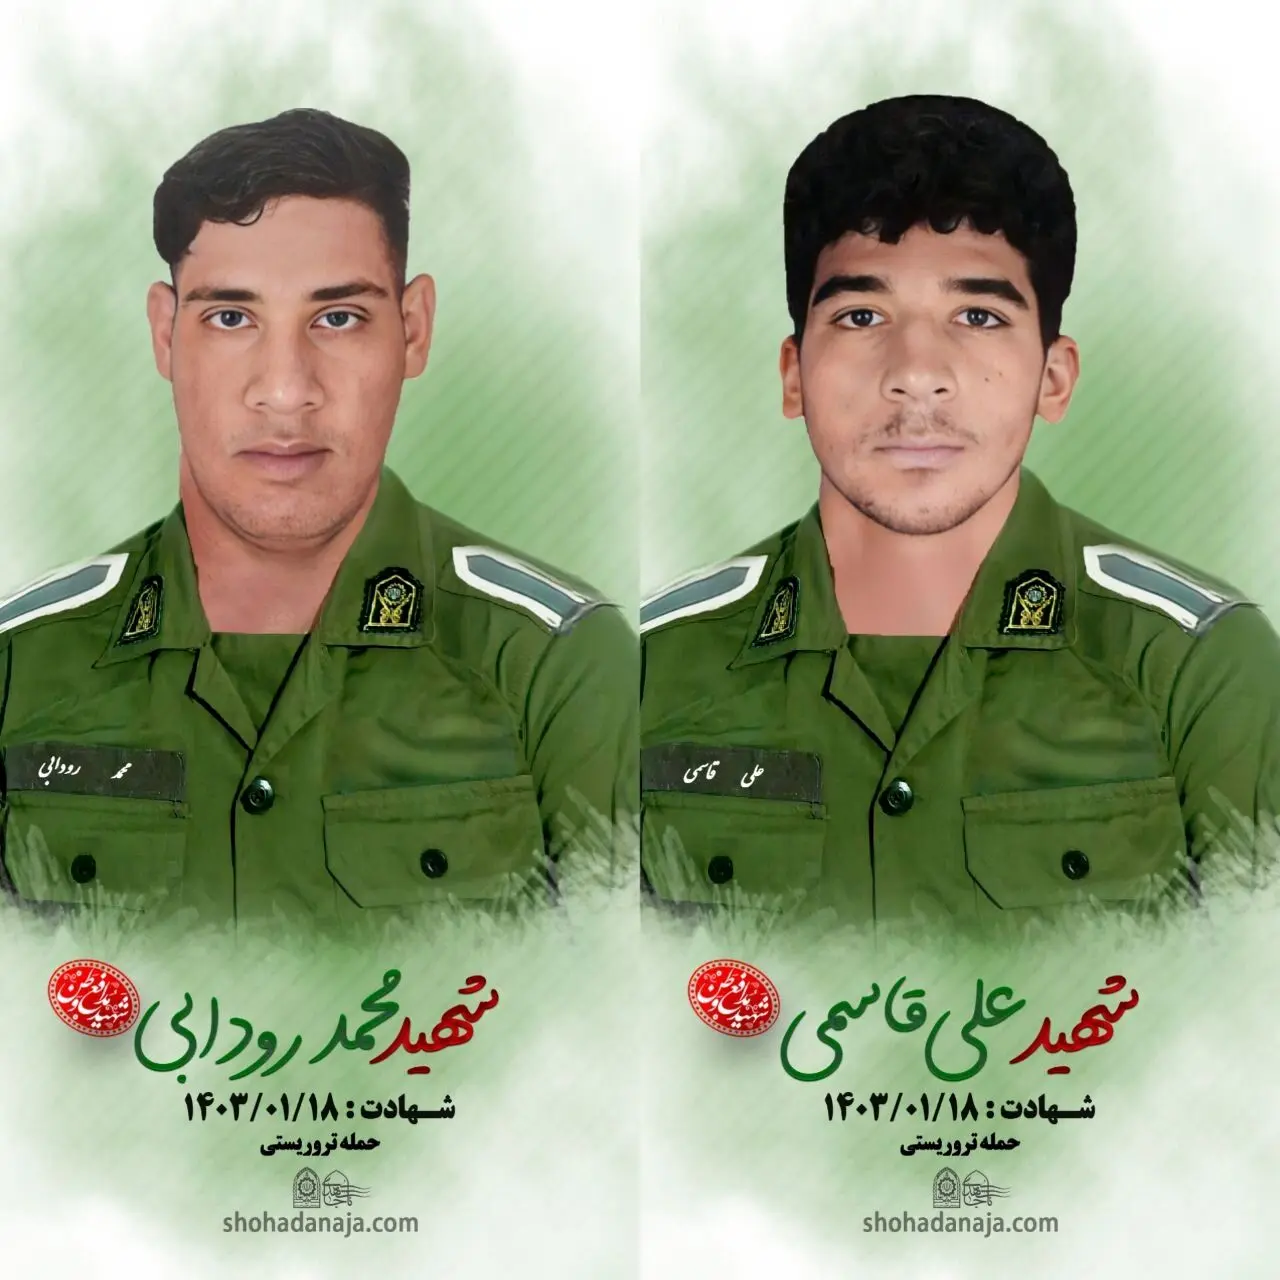 تصویری از دو سرباز شهید حادثه تروریستی امروز در کورین زاهدان/ عکس